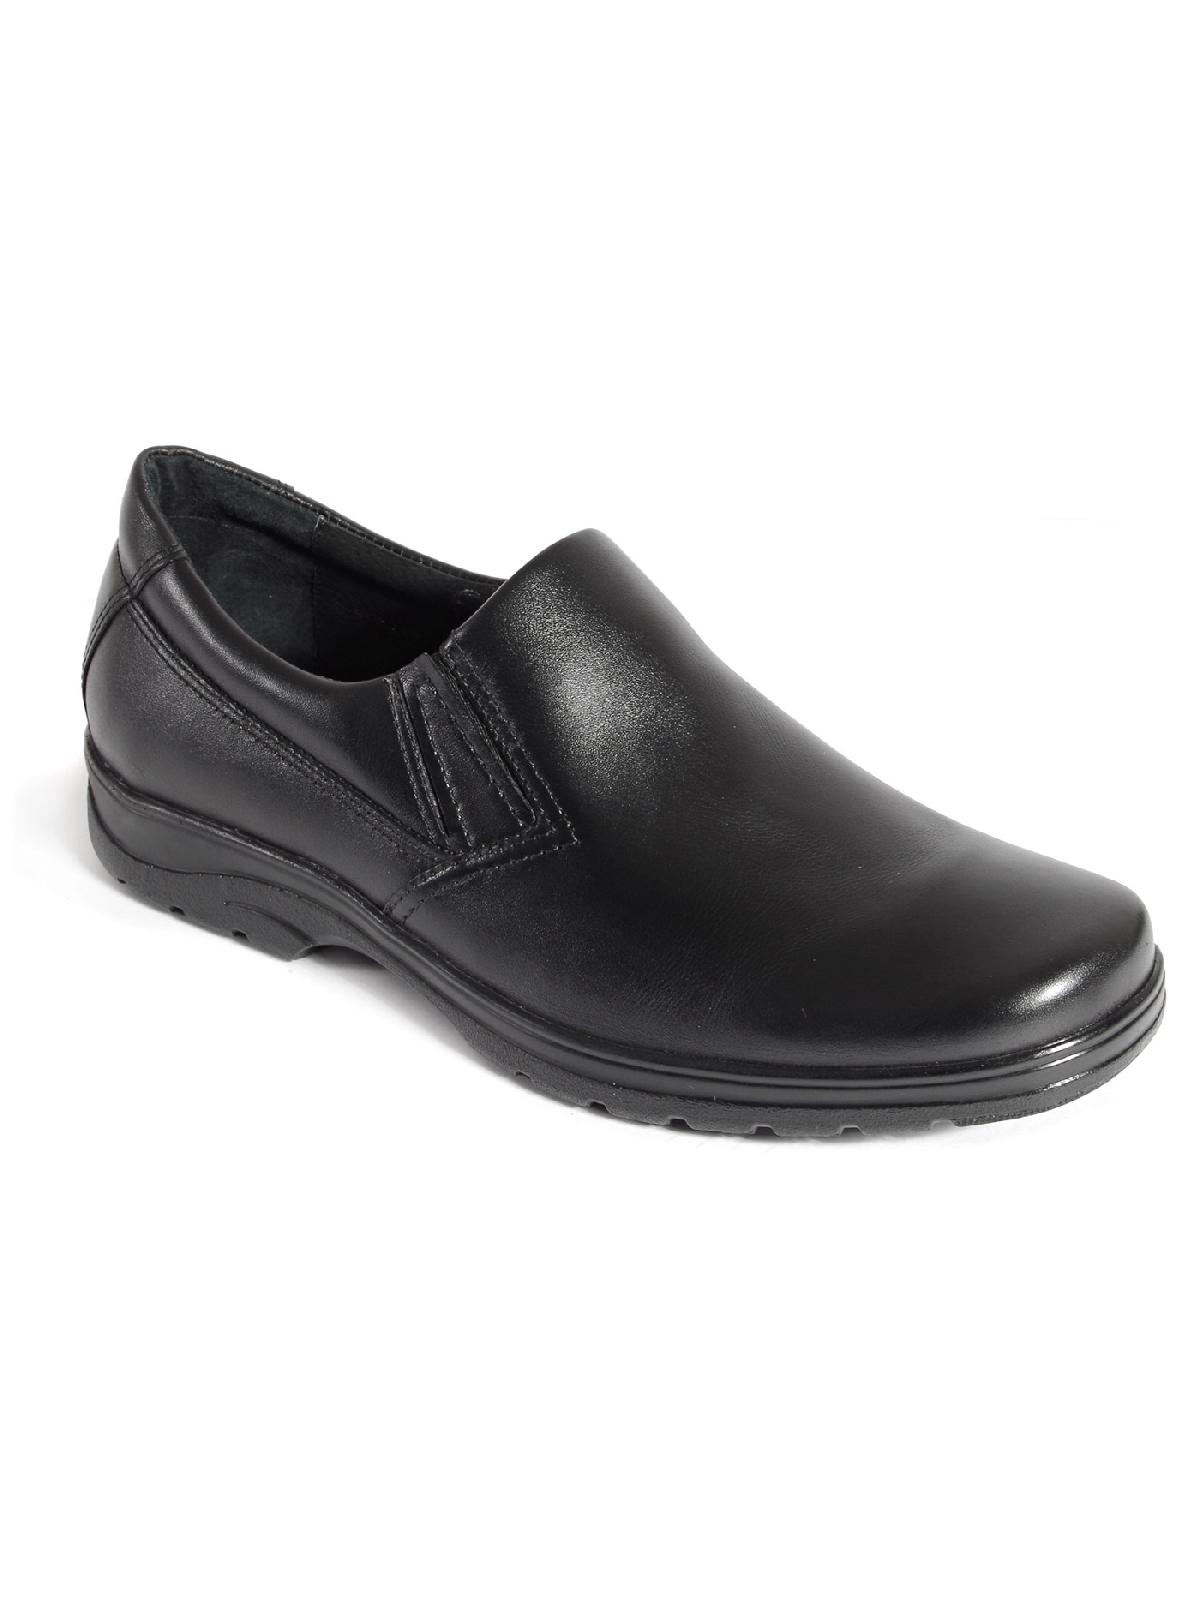 9-3717-011 П/ботинки мужские Енисей обувь 